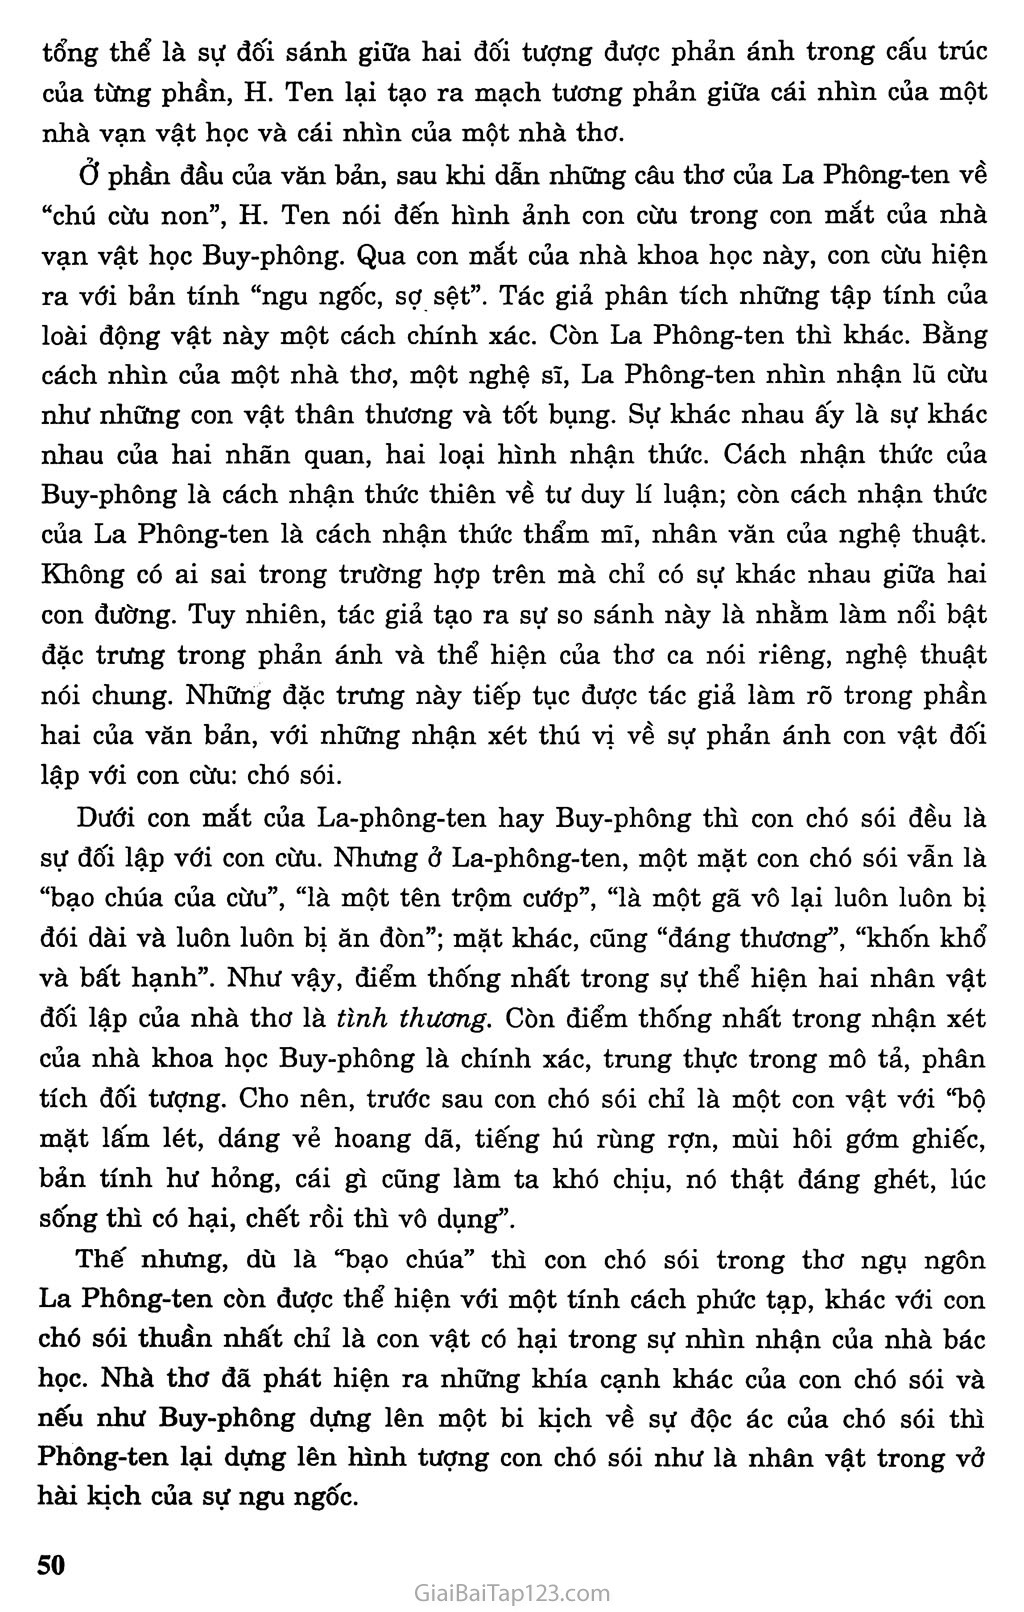 Chó sói và cừu trong thơ ngụ ngôn của La Phông - ten (trích) trang 4